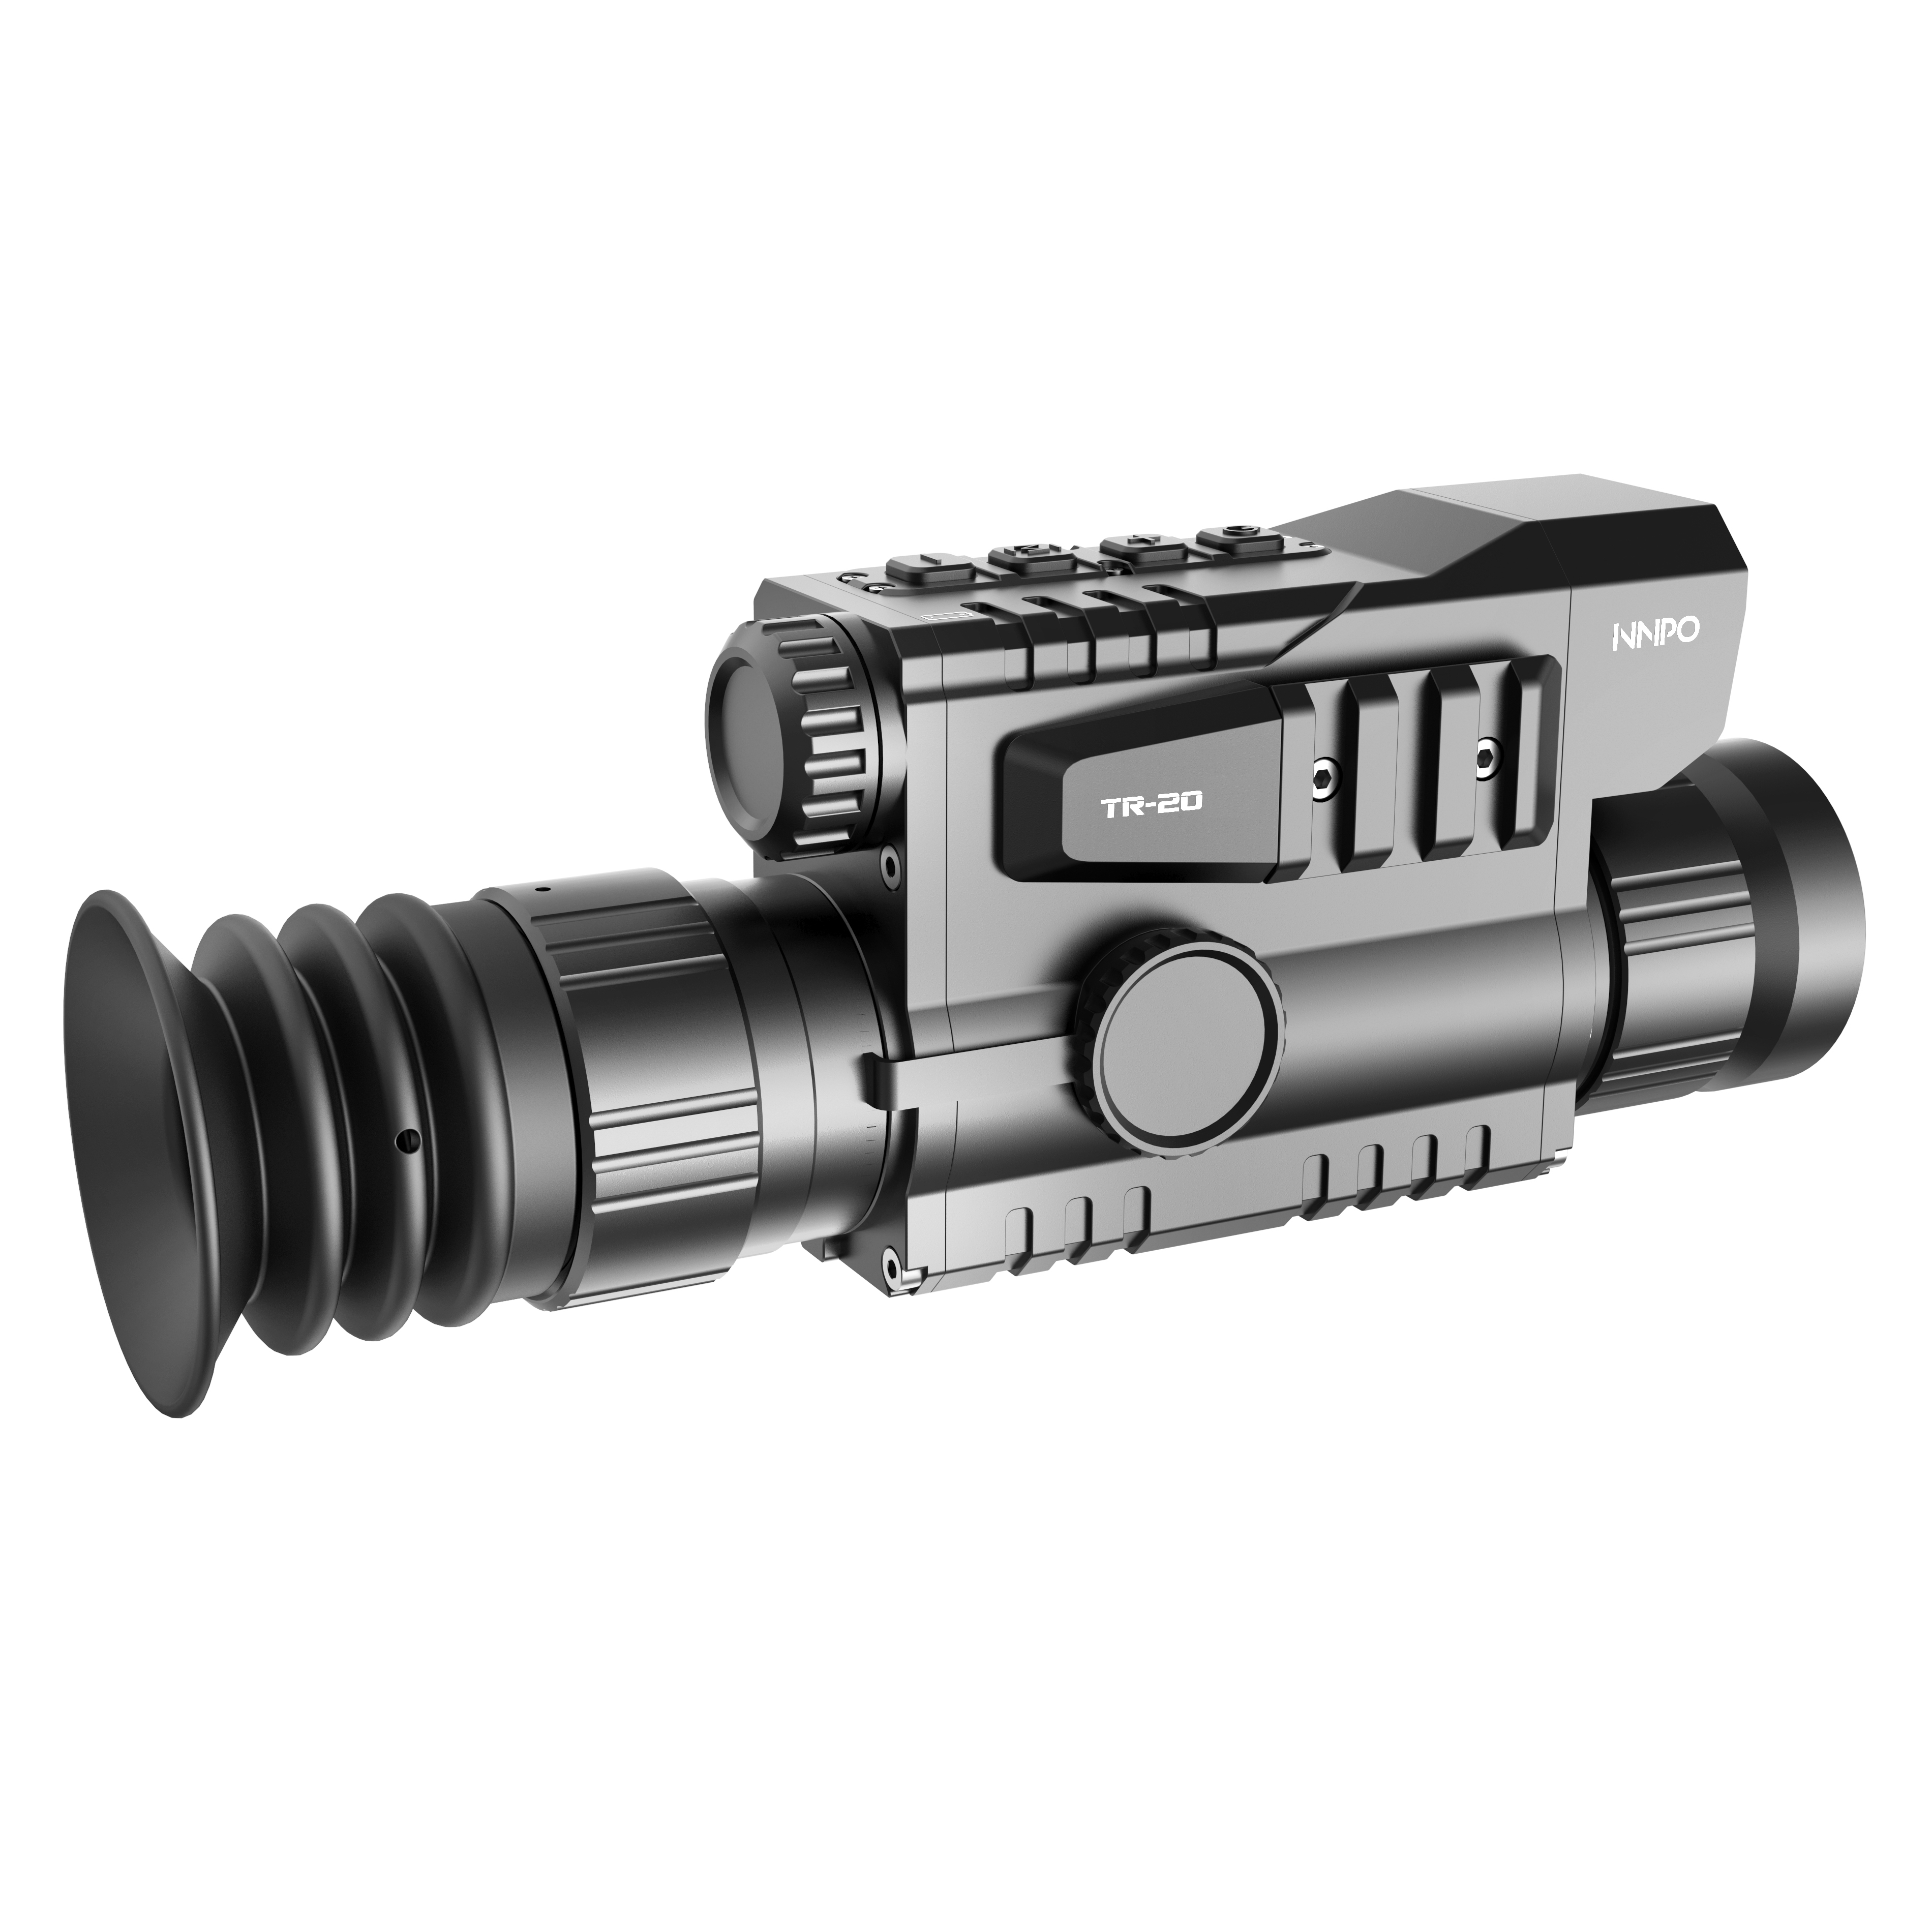    NNPO TR20B-25mm LRF   Ultra-mart